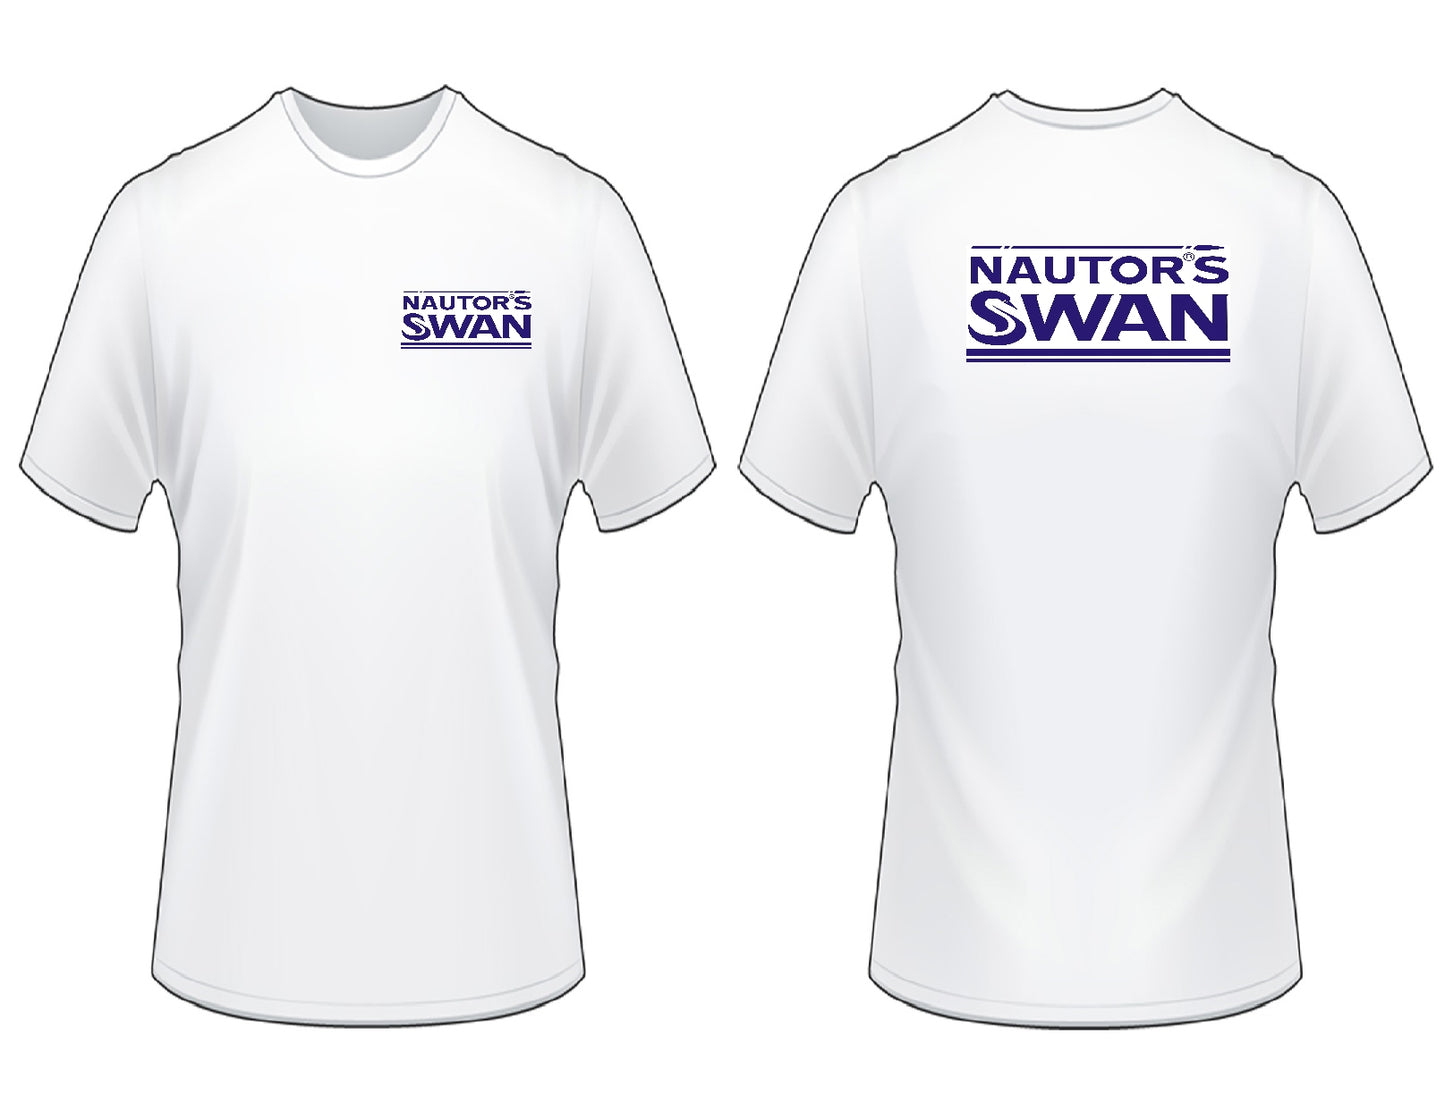 Nautors Swan T-Shirt